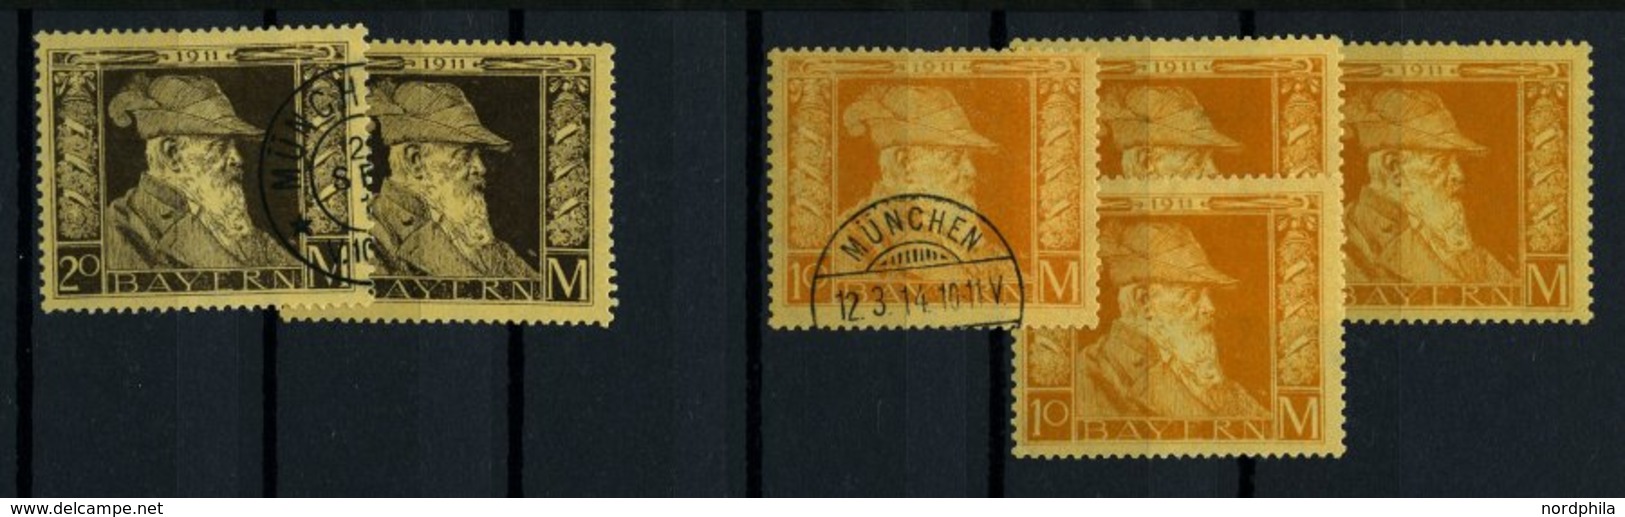 BAYERN o,*, **, 1876-1920, Dublettenpartie Pfennige, überwiegend mittlere Werte, Erhaltung meist feinst/Pracht, besichti